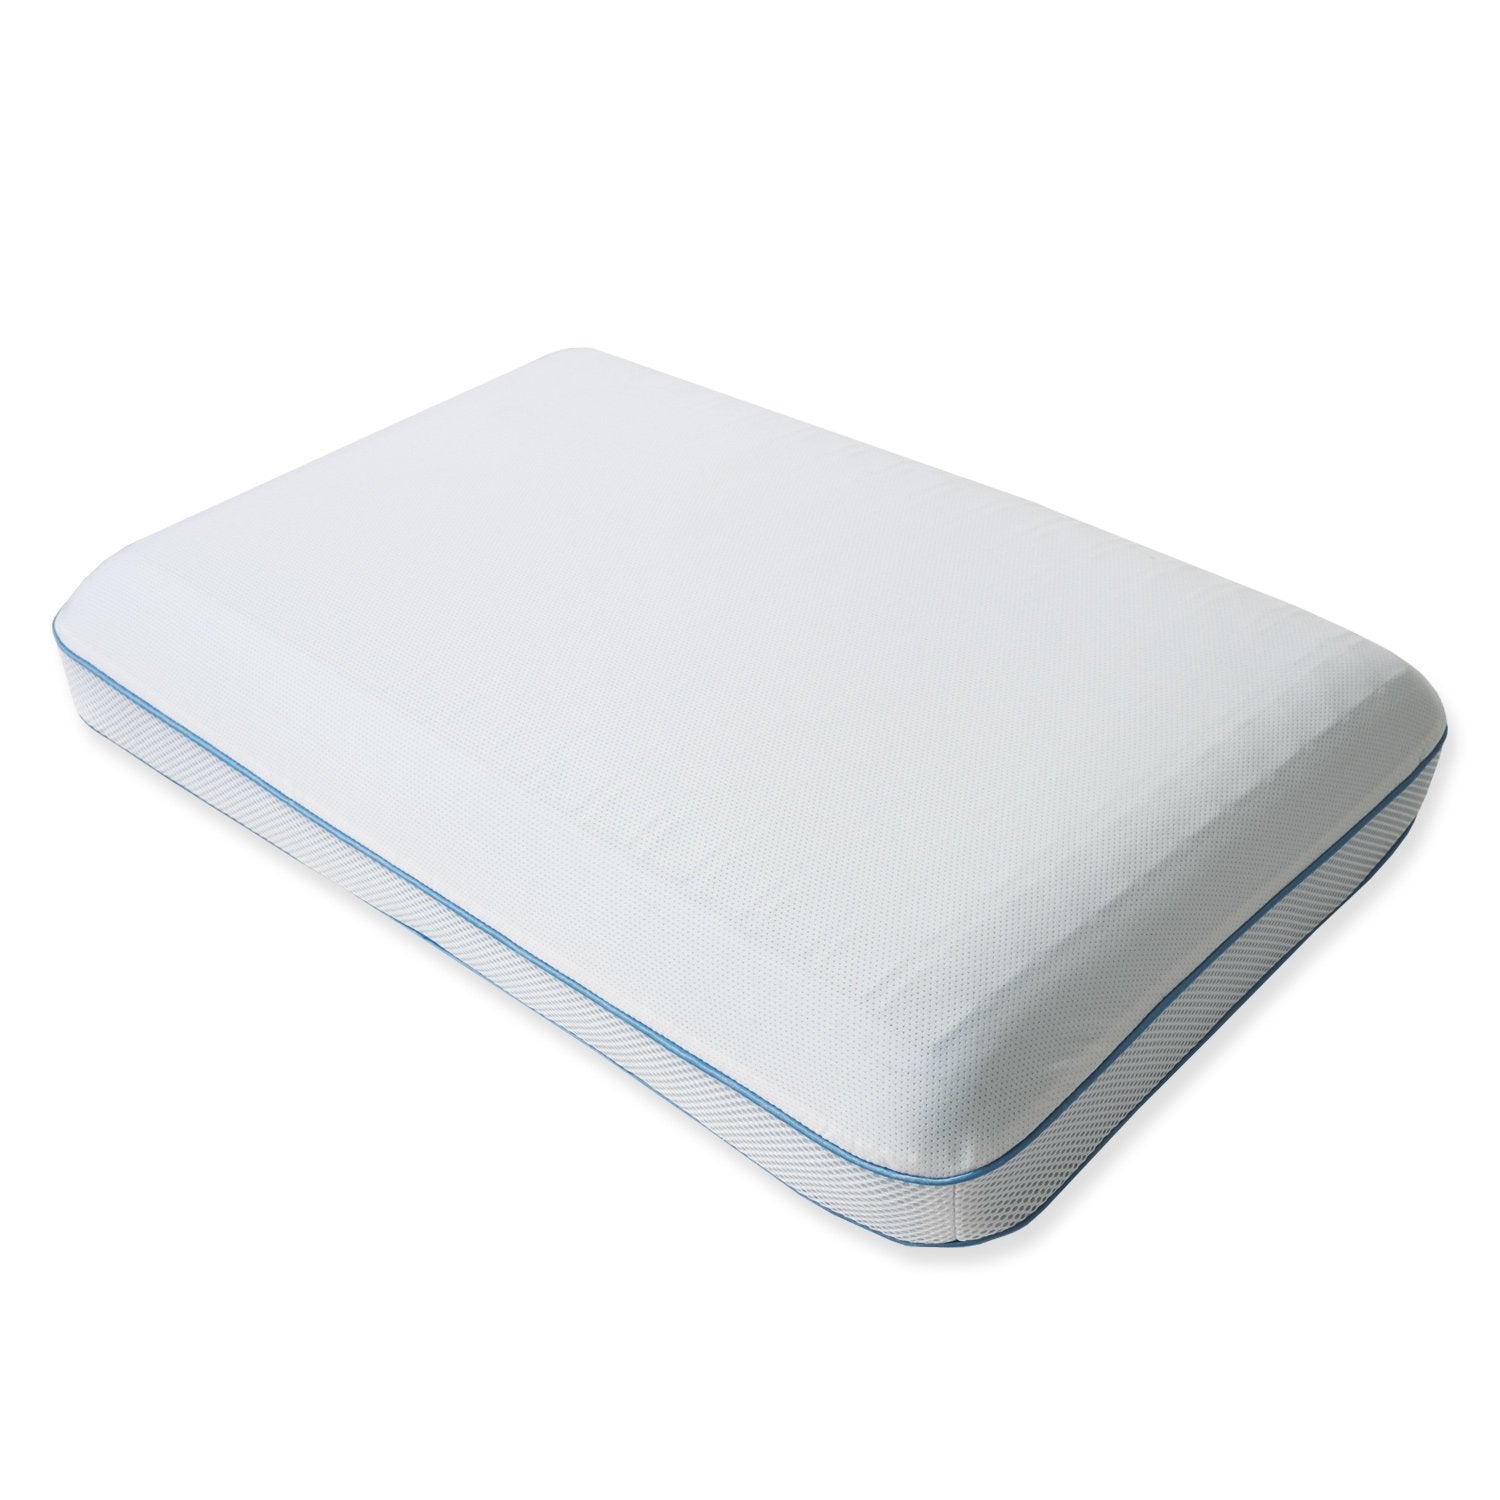 Cooling Gel Memory Foam Bed Pillow - Top